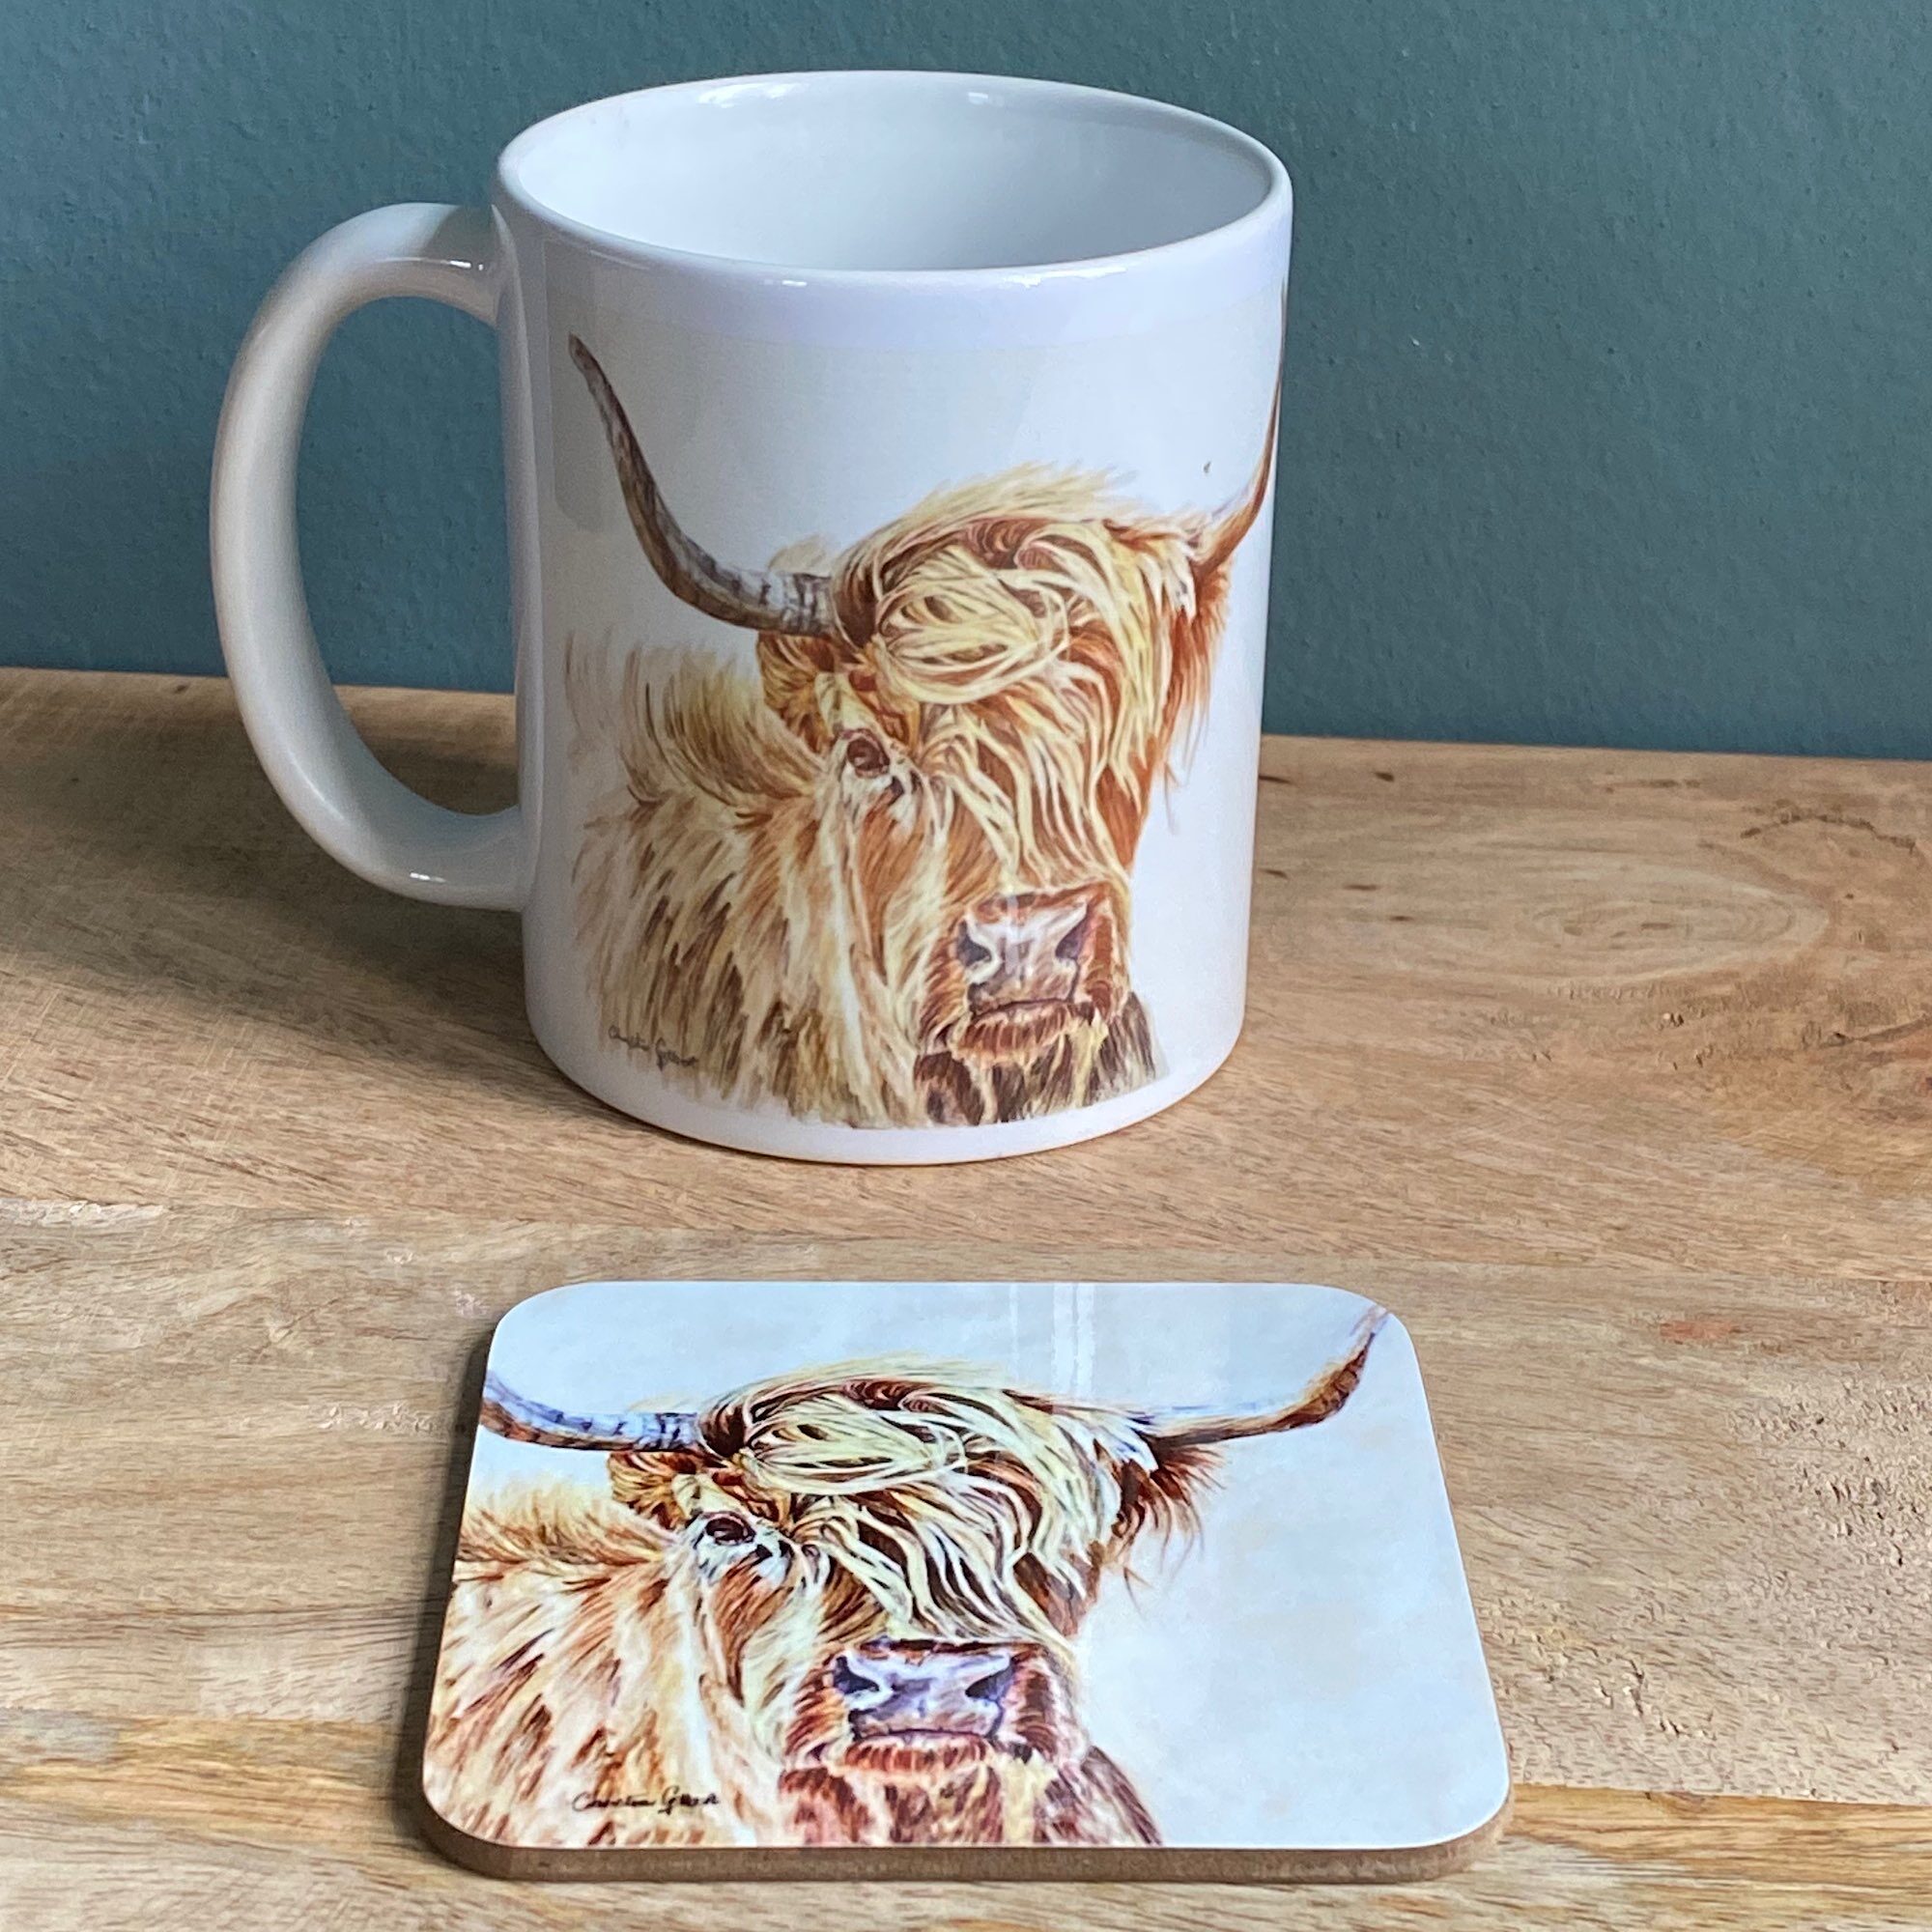 Seabreeze on a mug and coaster